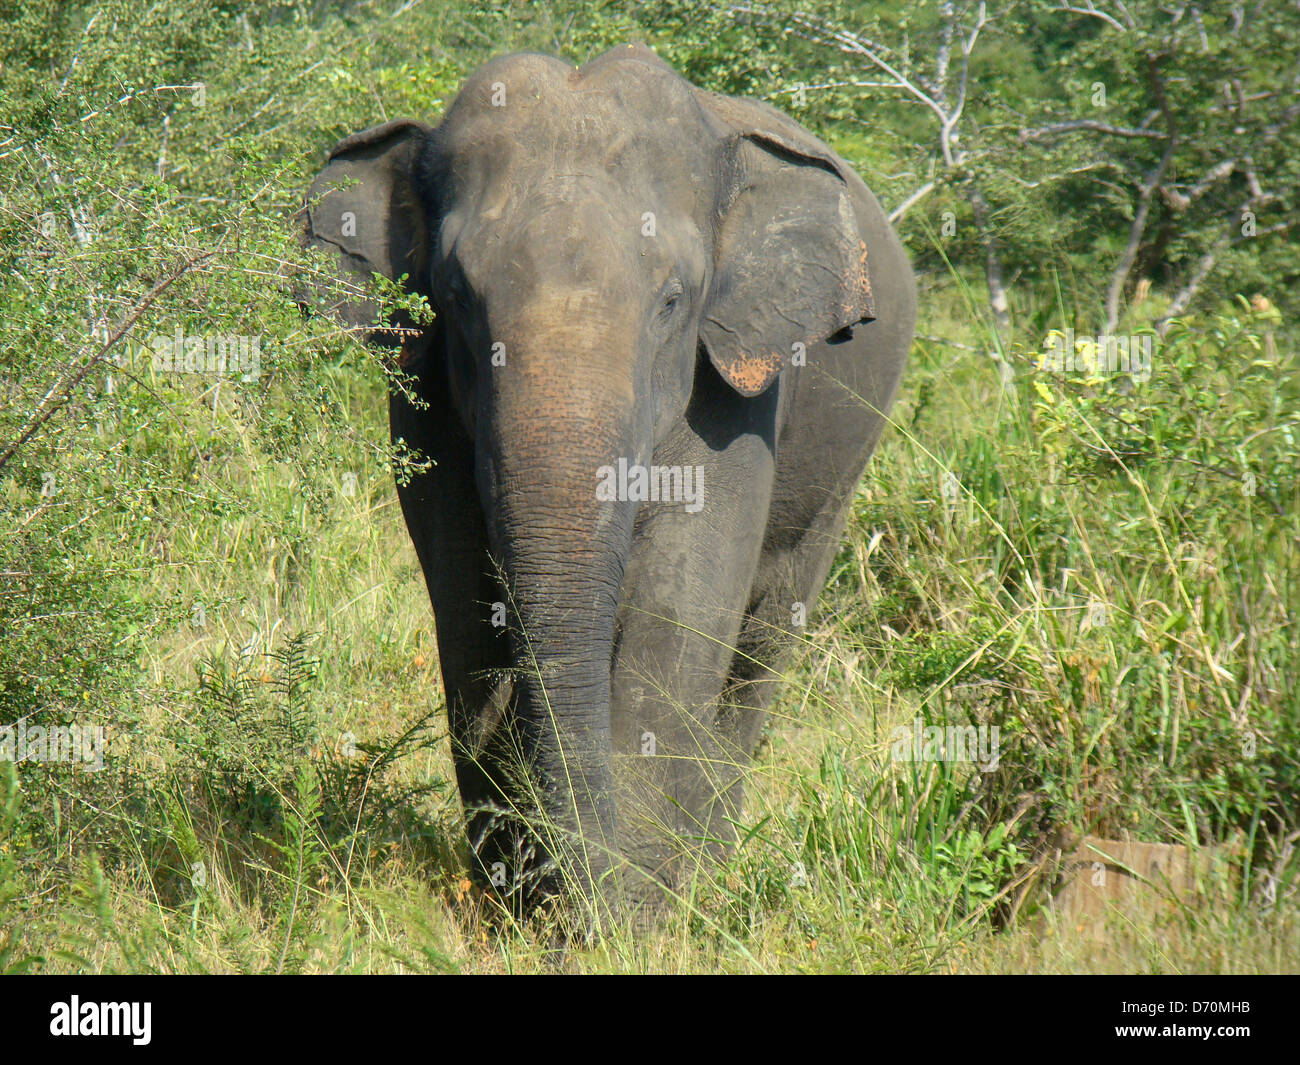 Sri Lanka, Uda Walawe National Park, Male Asian elephant (Elephas maximus maximus) Stock Photo